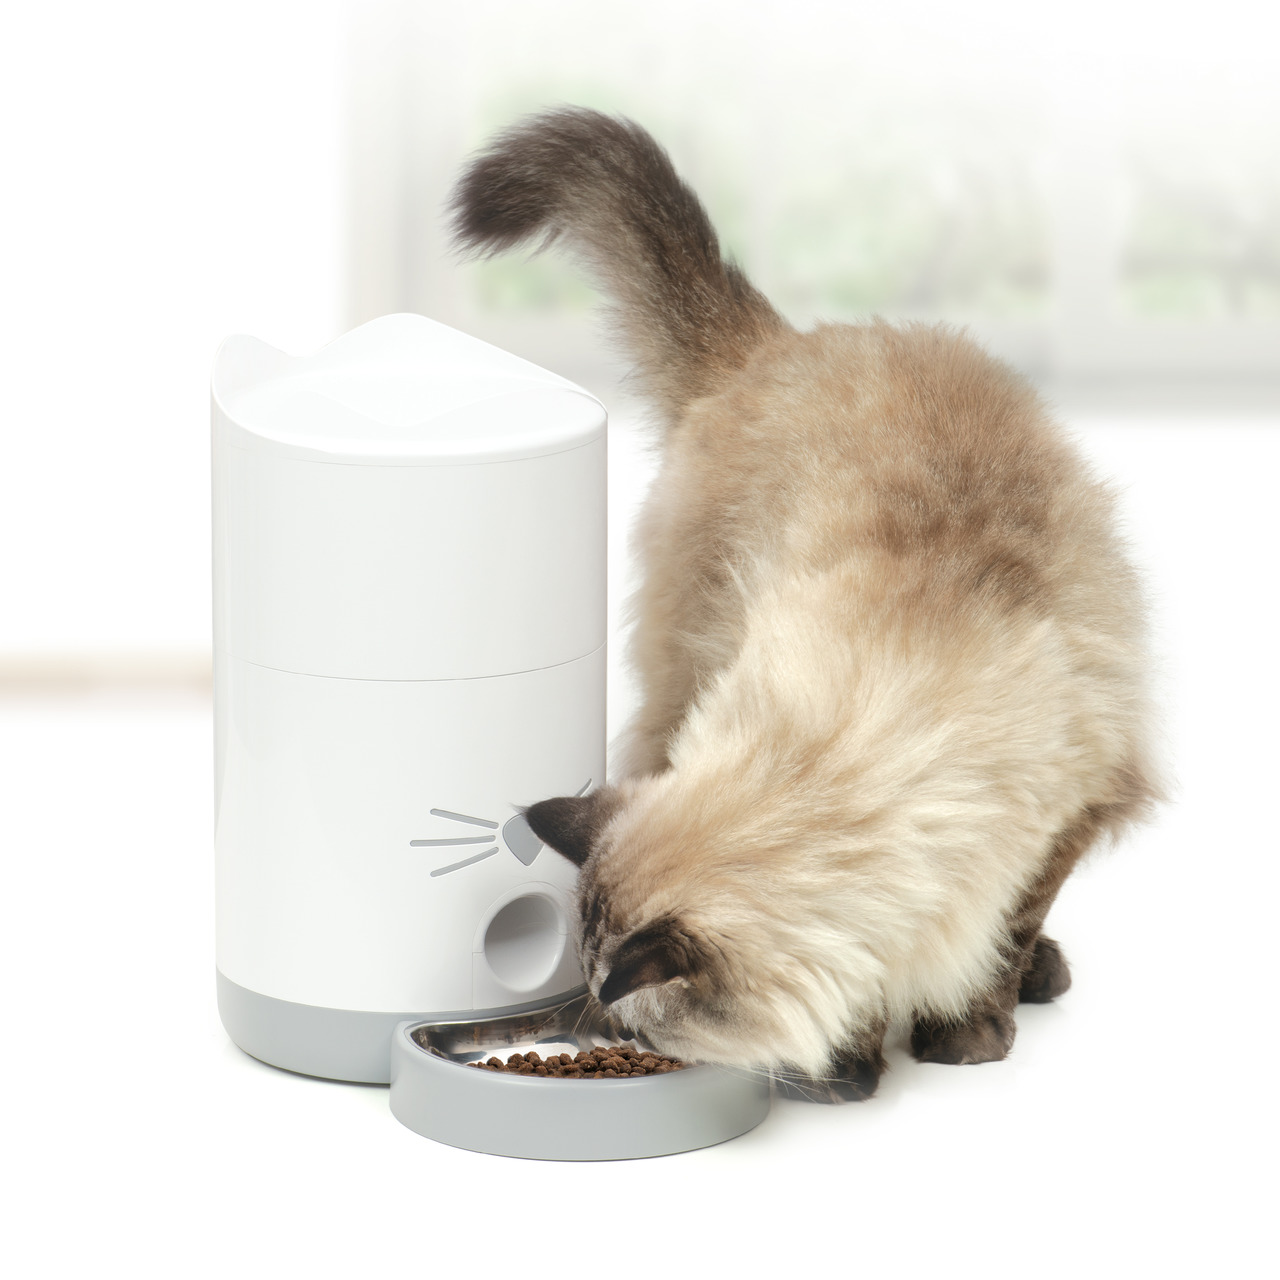 CatIt Pixi Smart Feeder Smart-Futternapf Katzen Futterautomat Zubehör